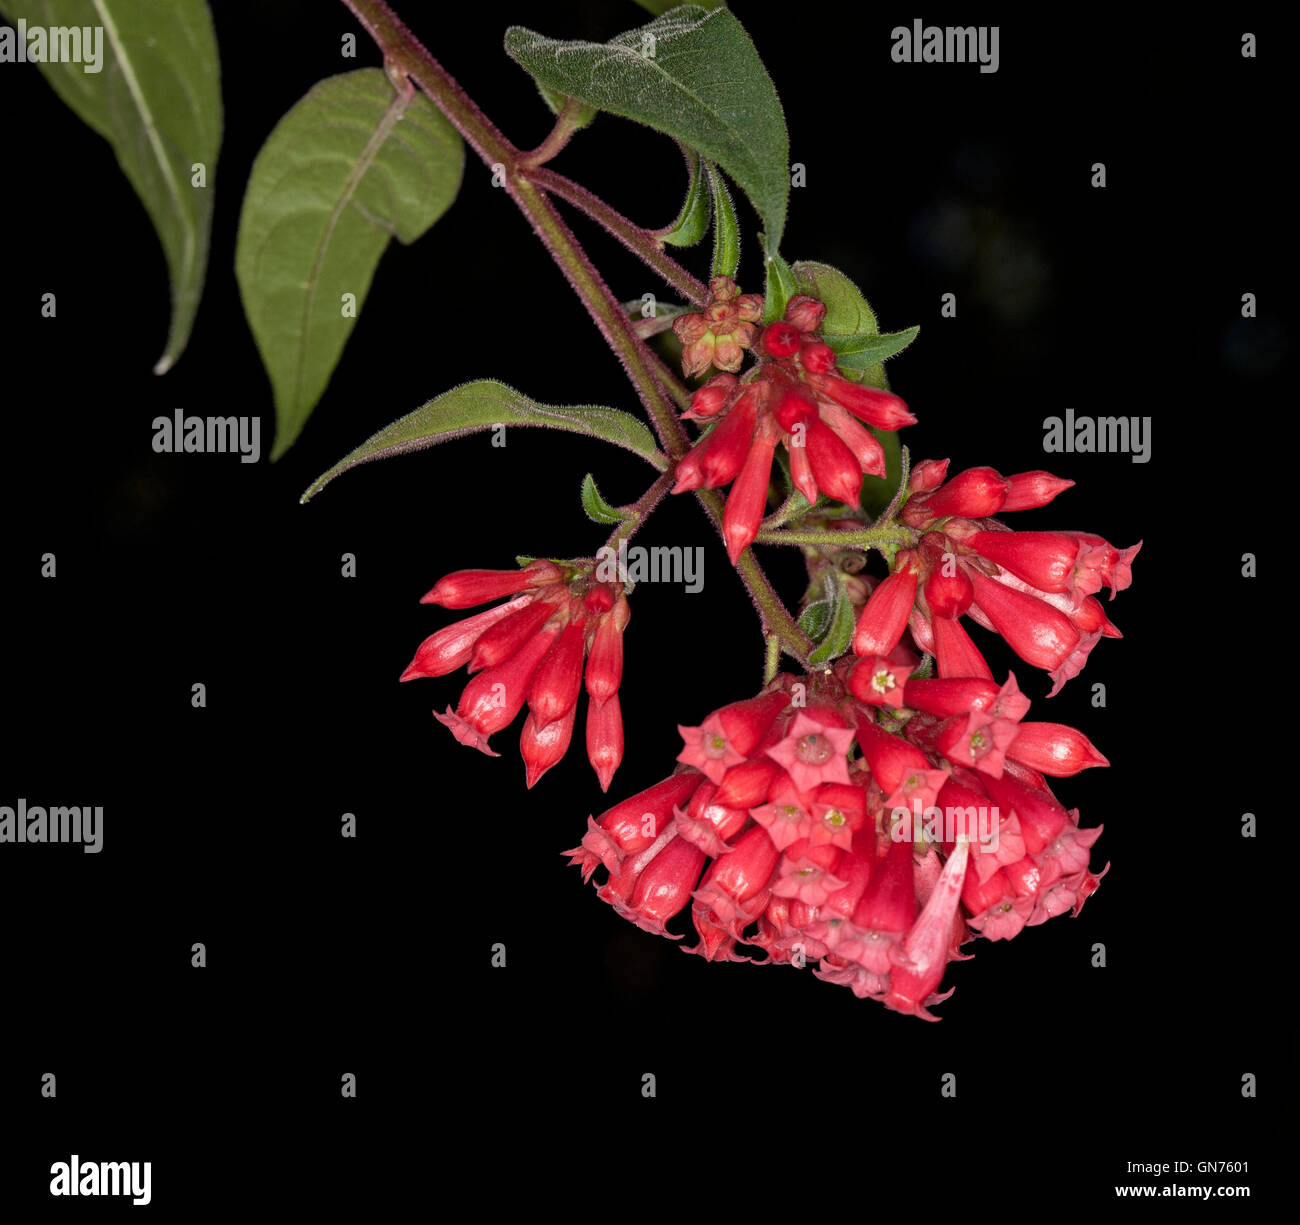 Cluster von roten Blumen & grüne Blätter Cestrum Elegans auf schwarzem Hintergrund, ein invasives Unkrautarten im nördlichen New South Wales Australien Stockfoto